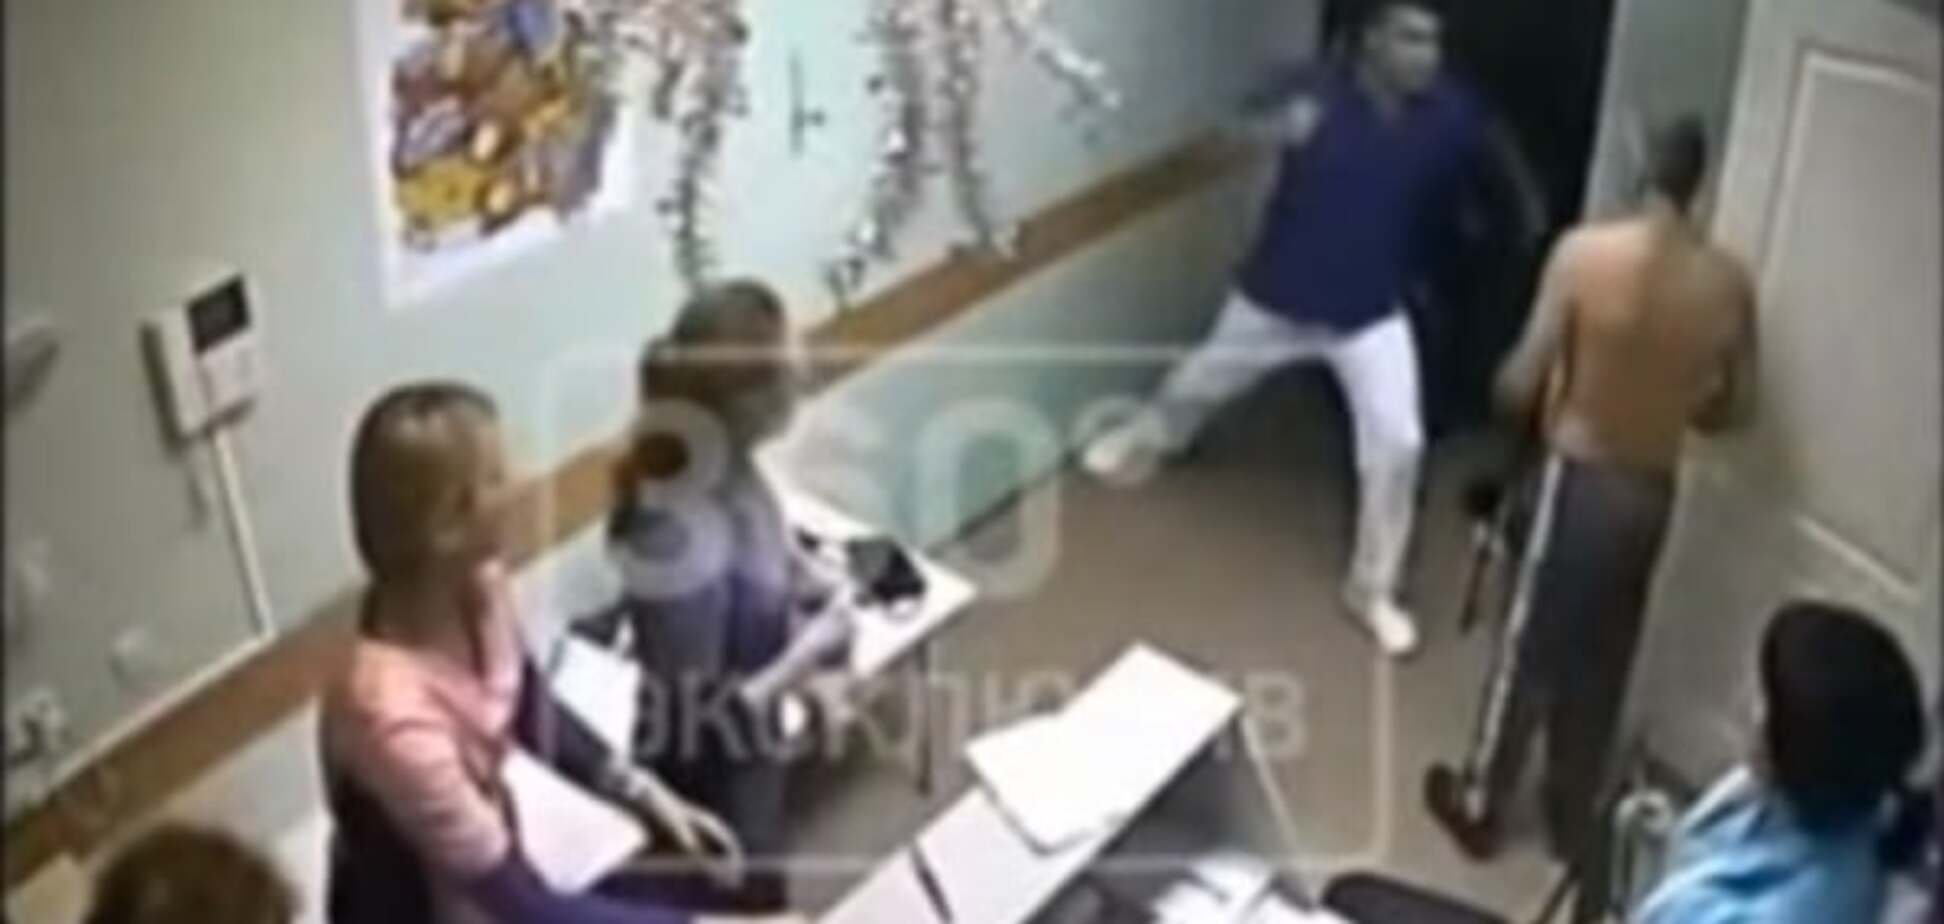 ЗМІ: у Росії лікар одним ударом вбив пацієнта - відео 18+